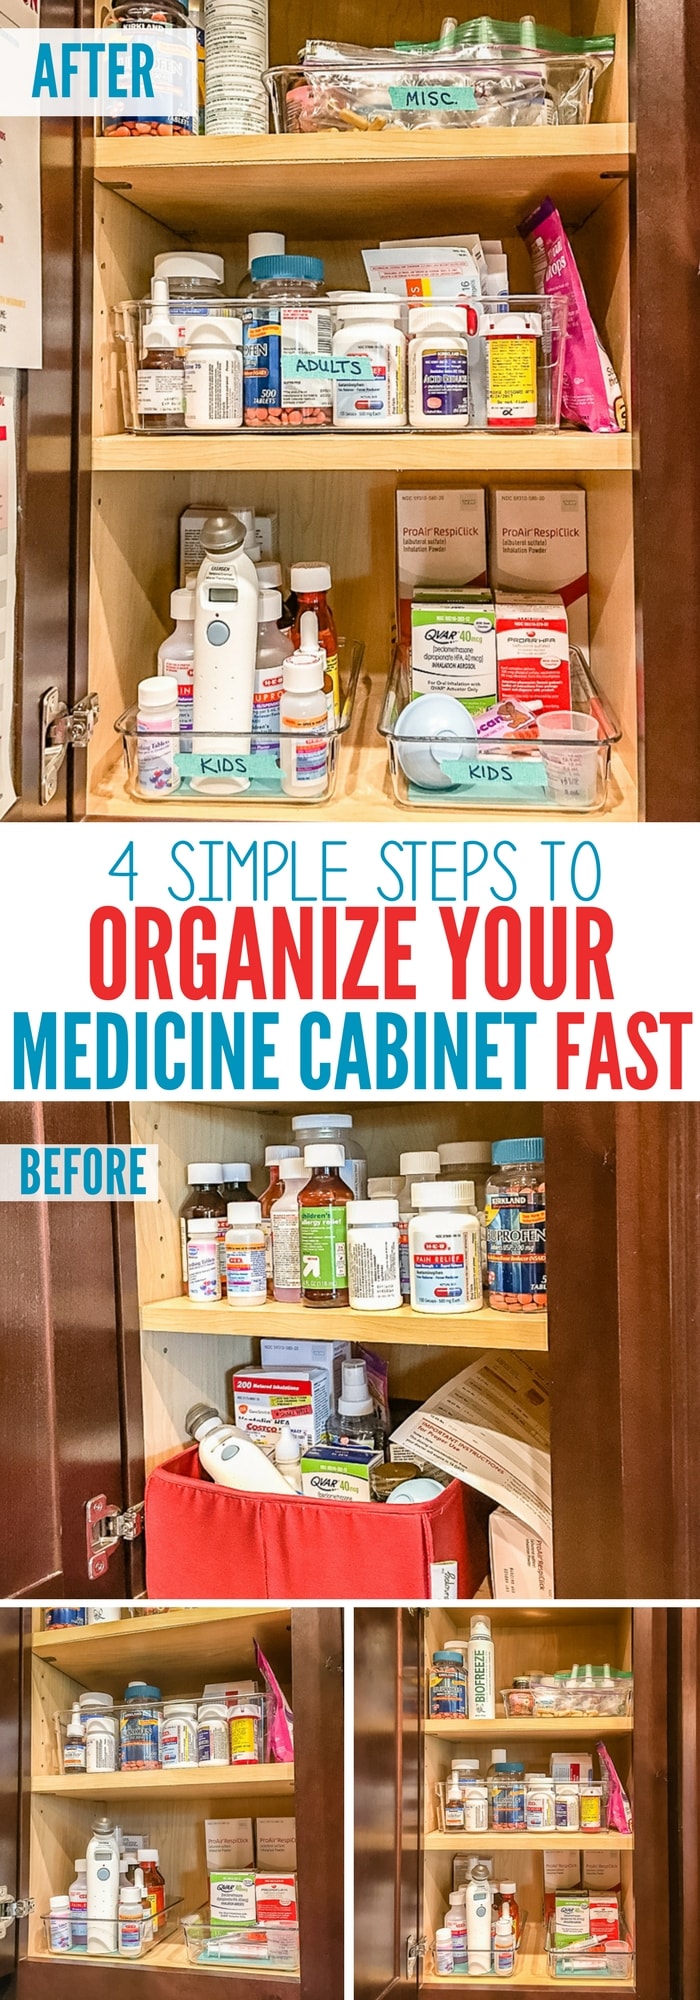 før og efter hvordan du hurtigt organiserer dit medicinskab